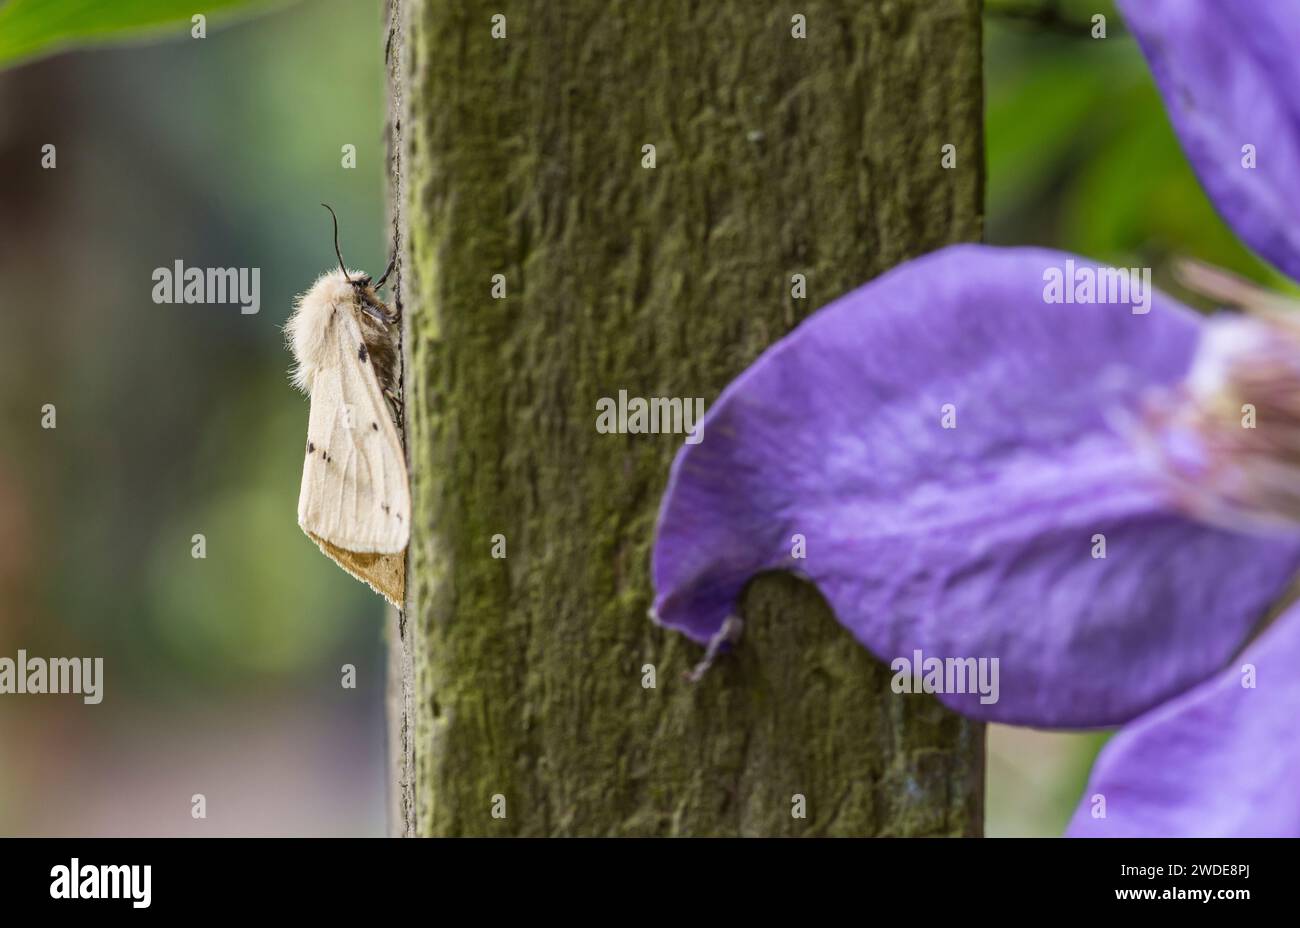 Buff Ermine Moth Spilosoma luteum, ruht auf einer Pergola neben einer violetten Clematis Blume in einem Garten, Co Durham, Juni Stockfoto